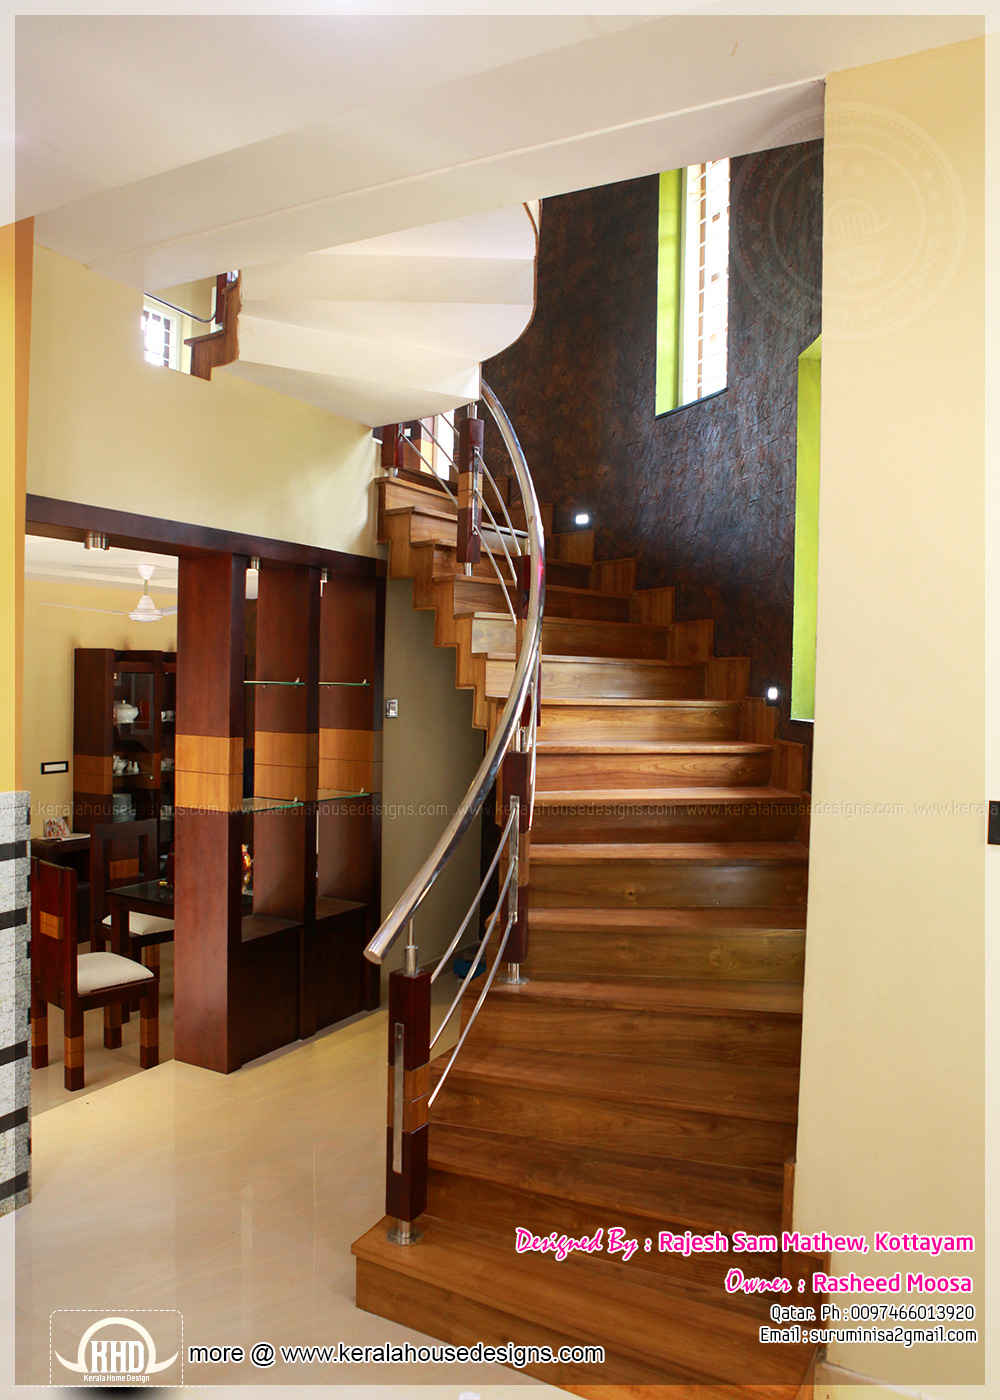  Modern  Home  Designs  Kerala  interior  design  with photos